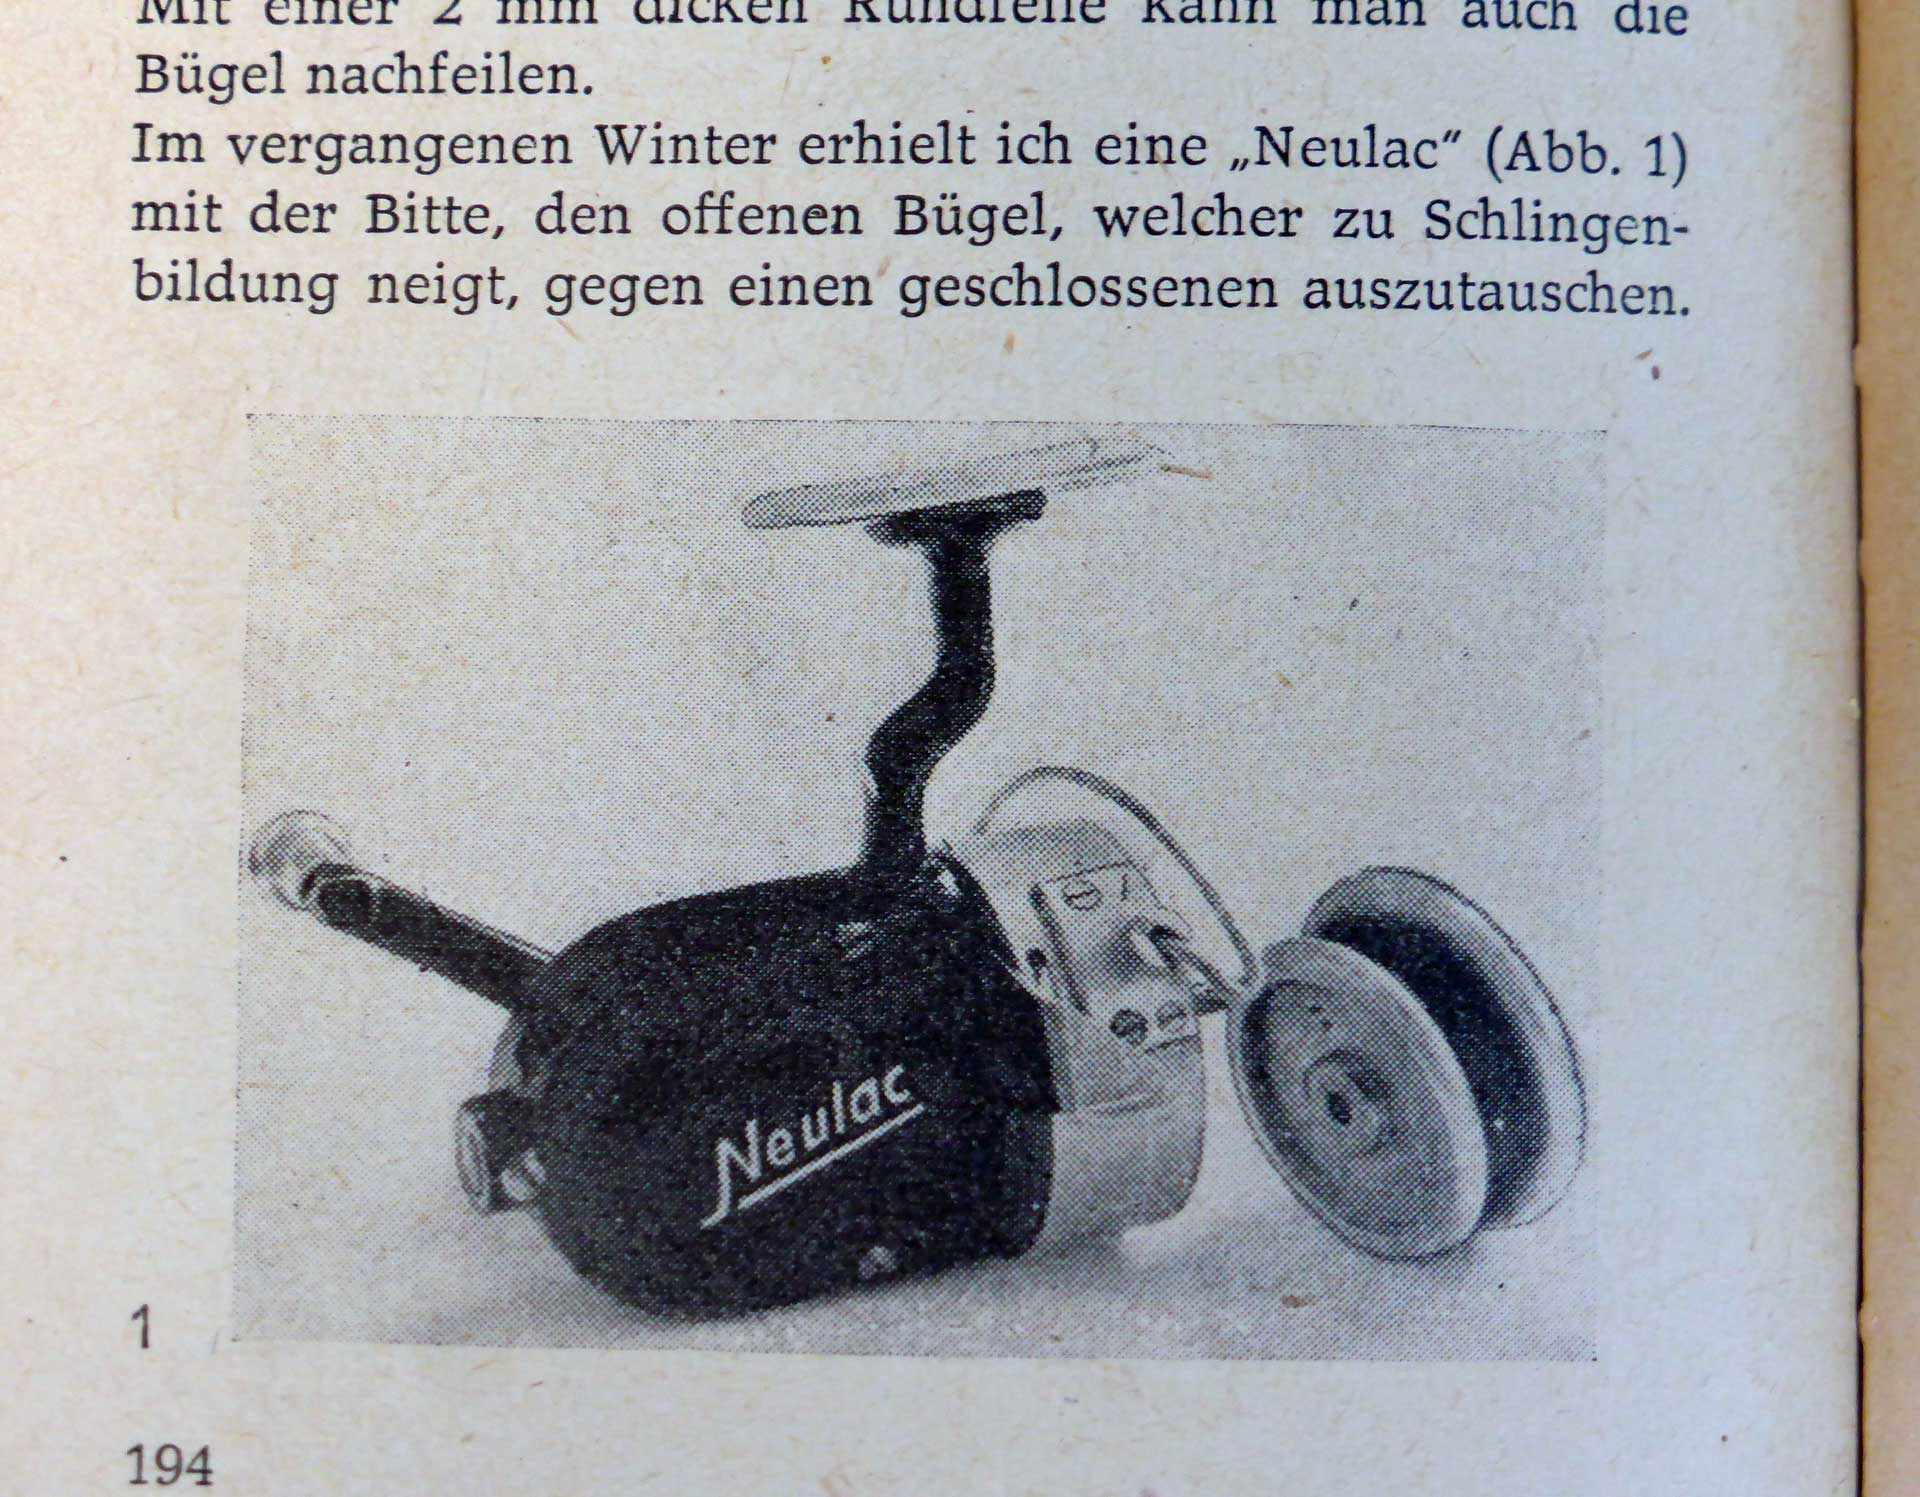 In einem Artikel im DDR-Anglerkalender berichtet Rudolf Schröpfer über seinen Vollbügel-Umbau der Neulac. Hier sieht man auch seine typische Fußreparatur. Aus: Jahrbuch des Anglers,1963, Ostberlin.